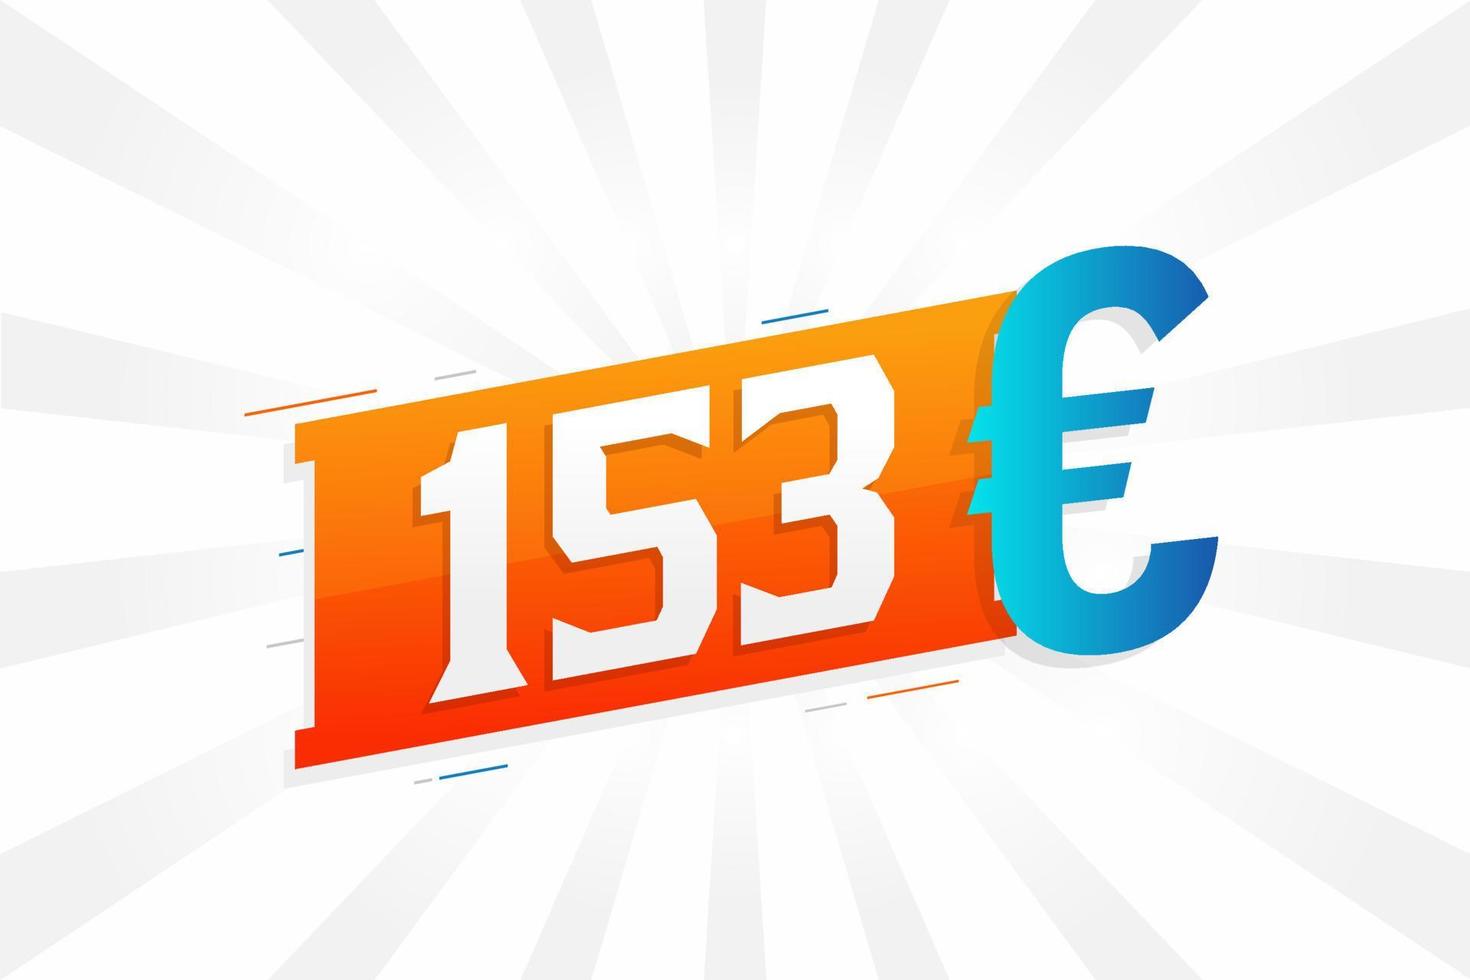 153 Euro Currency vector text symbol. 153 Euro European Union Money stock vector